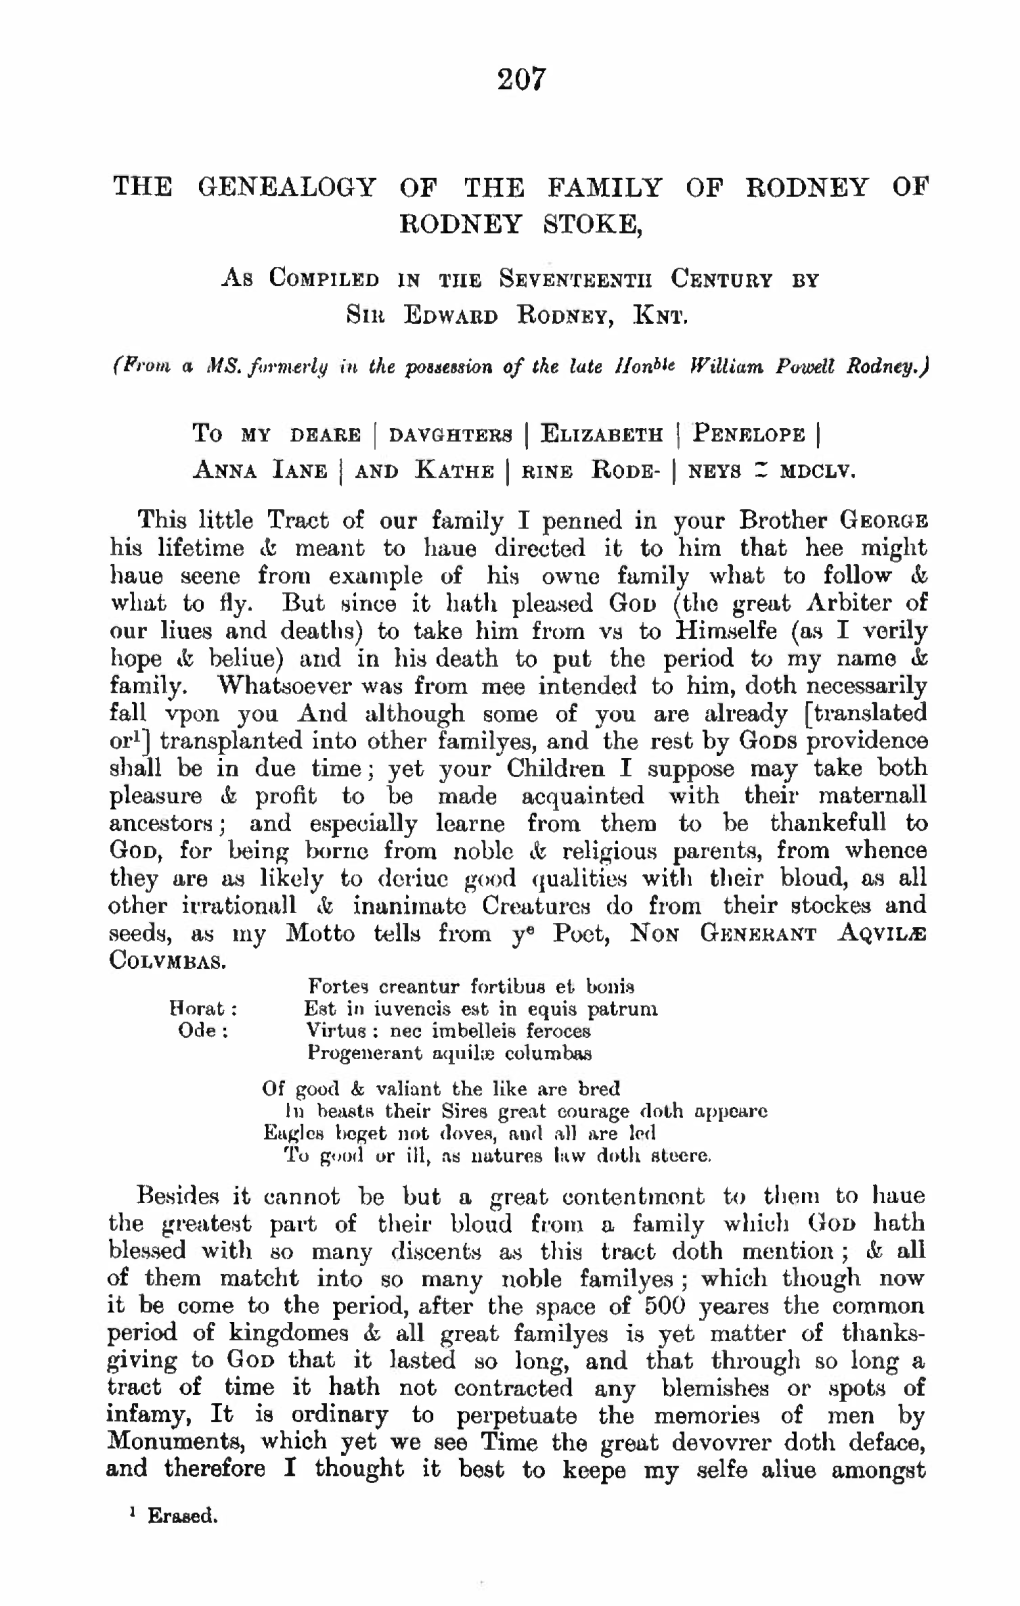 The Genealogy of the Family of Rodney of Rodney Stoke